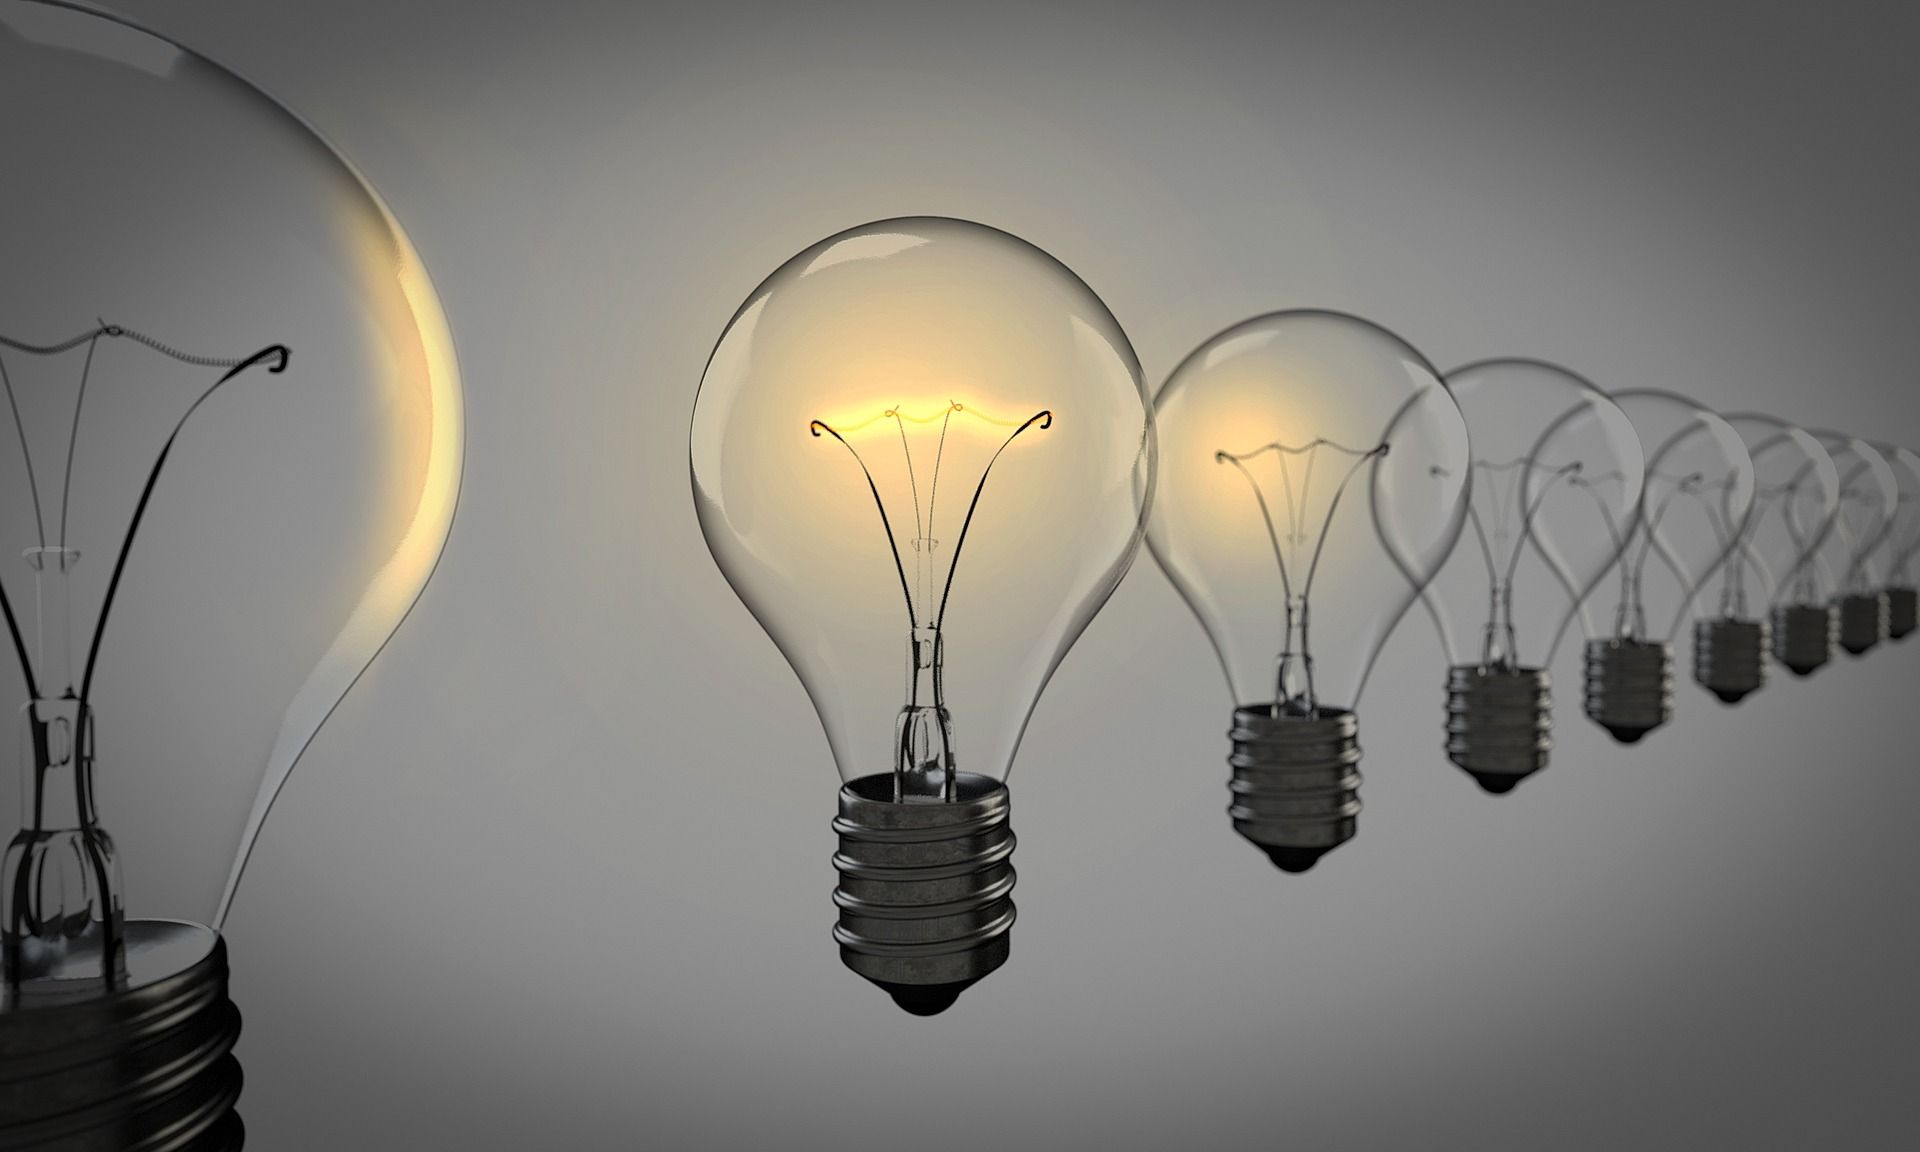 Des ampoules sont suspendues en l'air, avec seulement une alimentÃ©e - Image par Arek Socha de https://pixabay.com/fr/photos/ampoules-id%C3%A9es-inspiration-1875384/